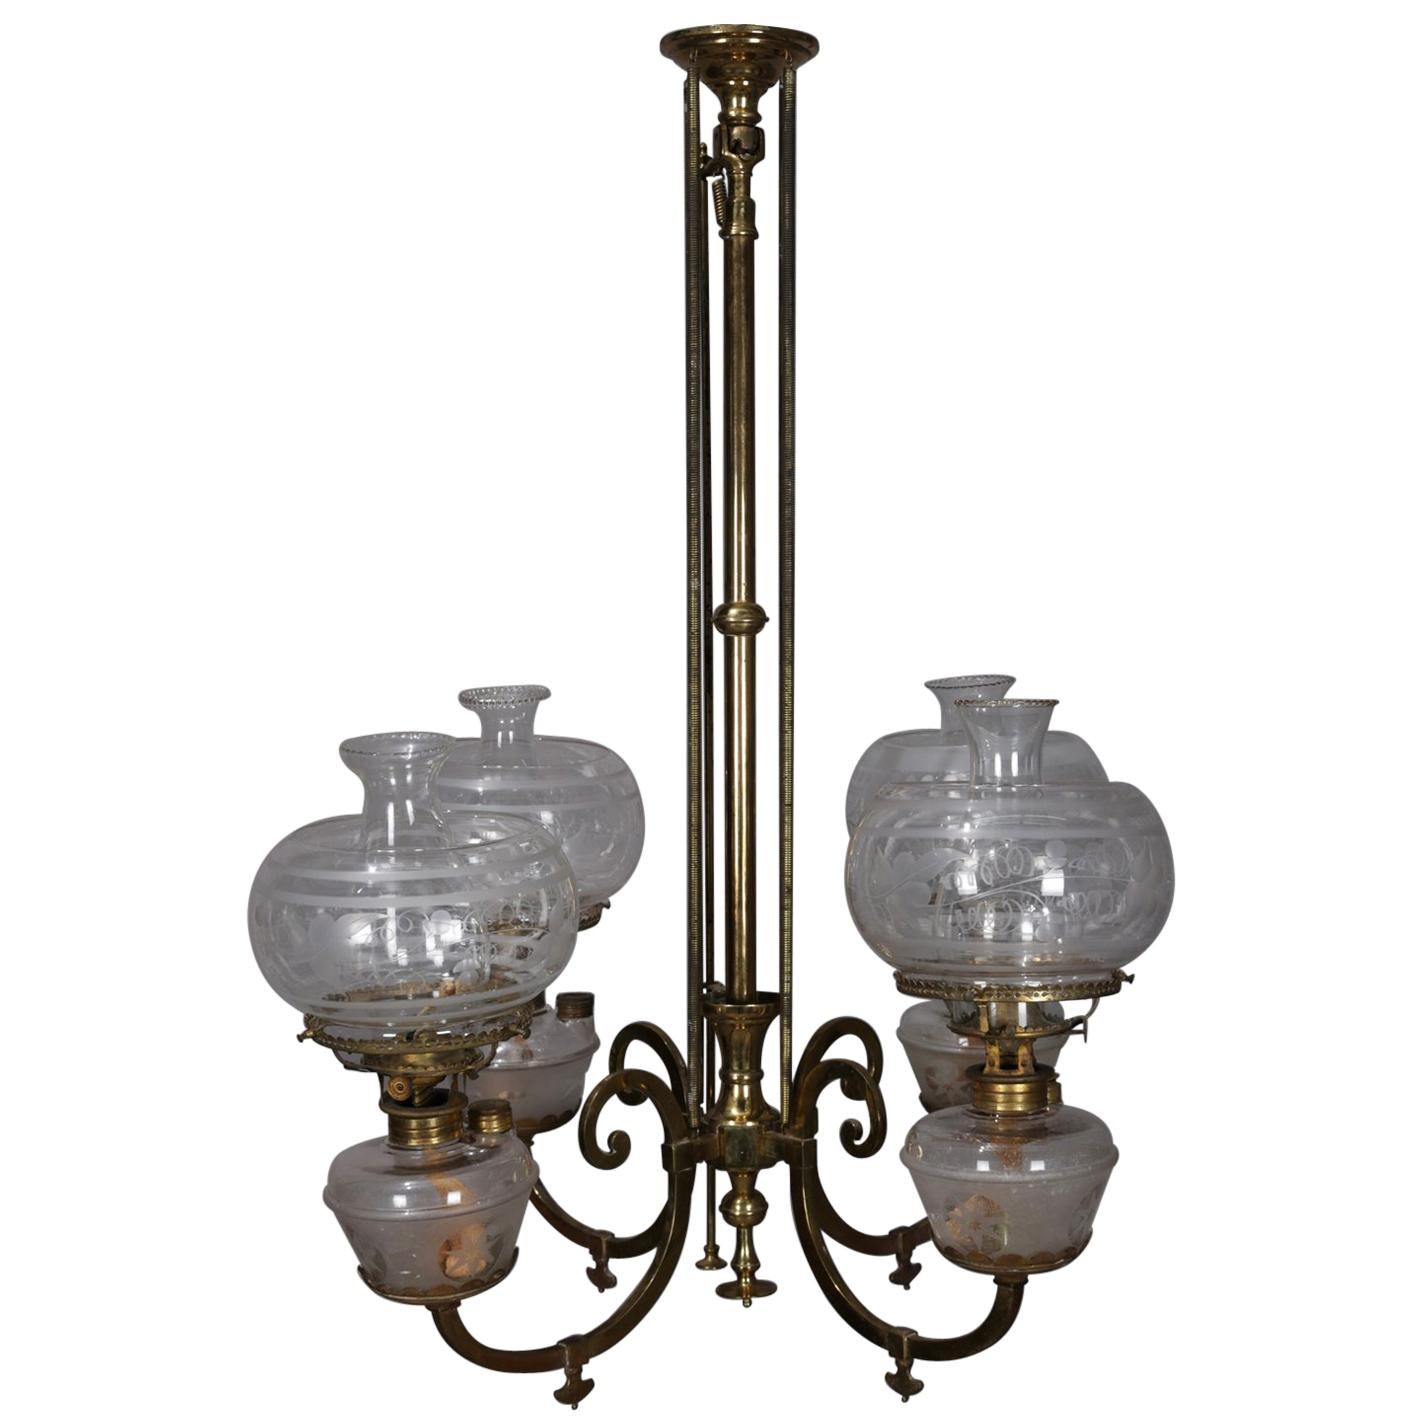 Early Brass Kerosene 4-Light Gas Chandelier, circa 1870